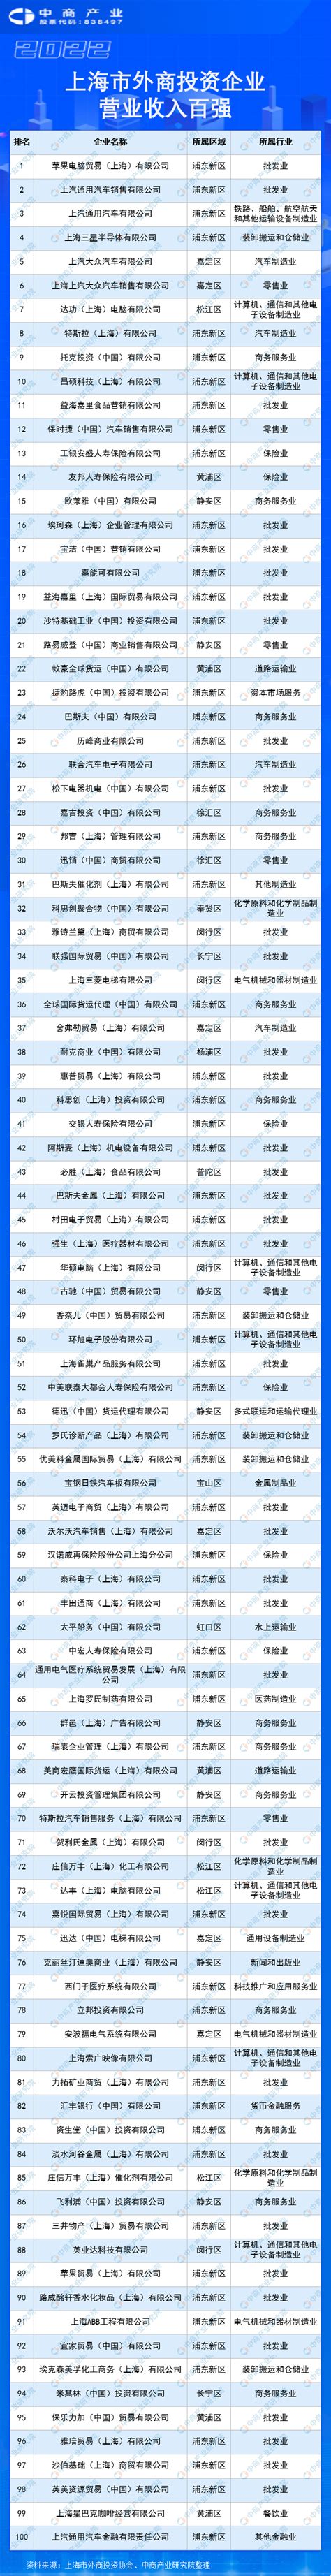 关于公示2022年度上海市第一批拟认定高新技术企业名单的通知-上海济语知识产权代理有限公司